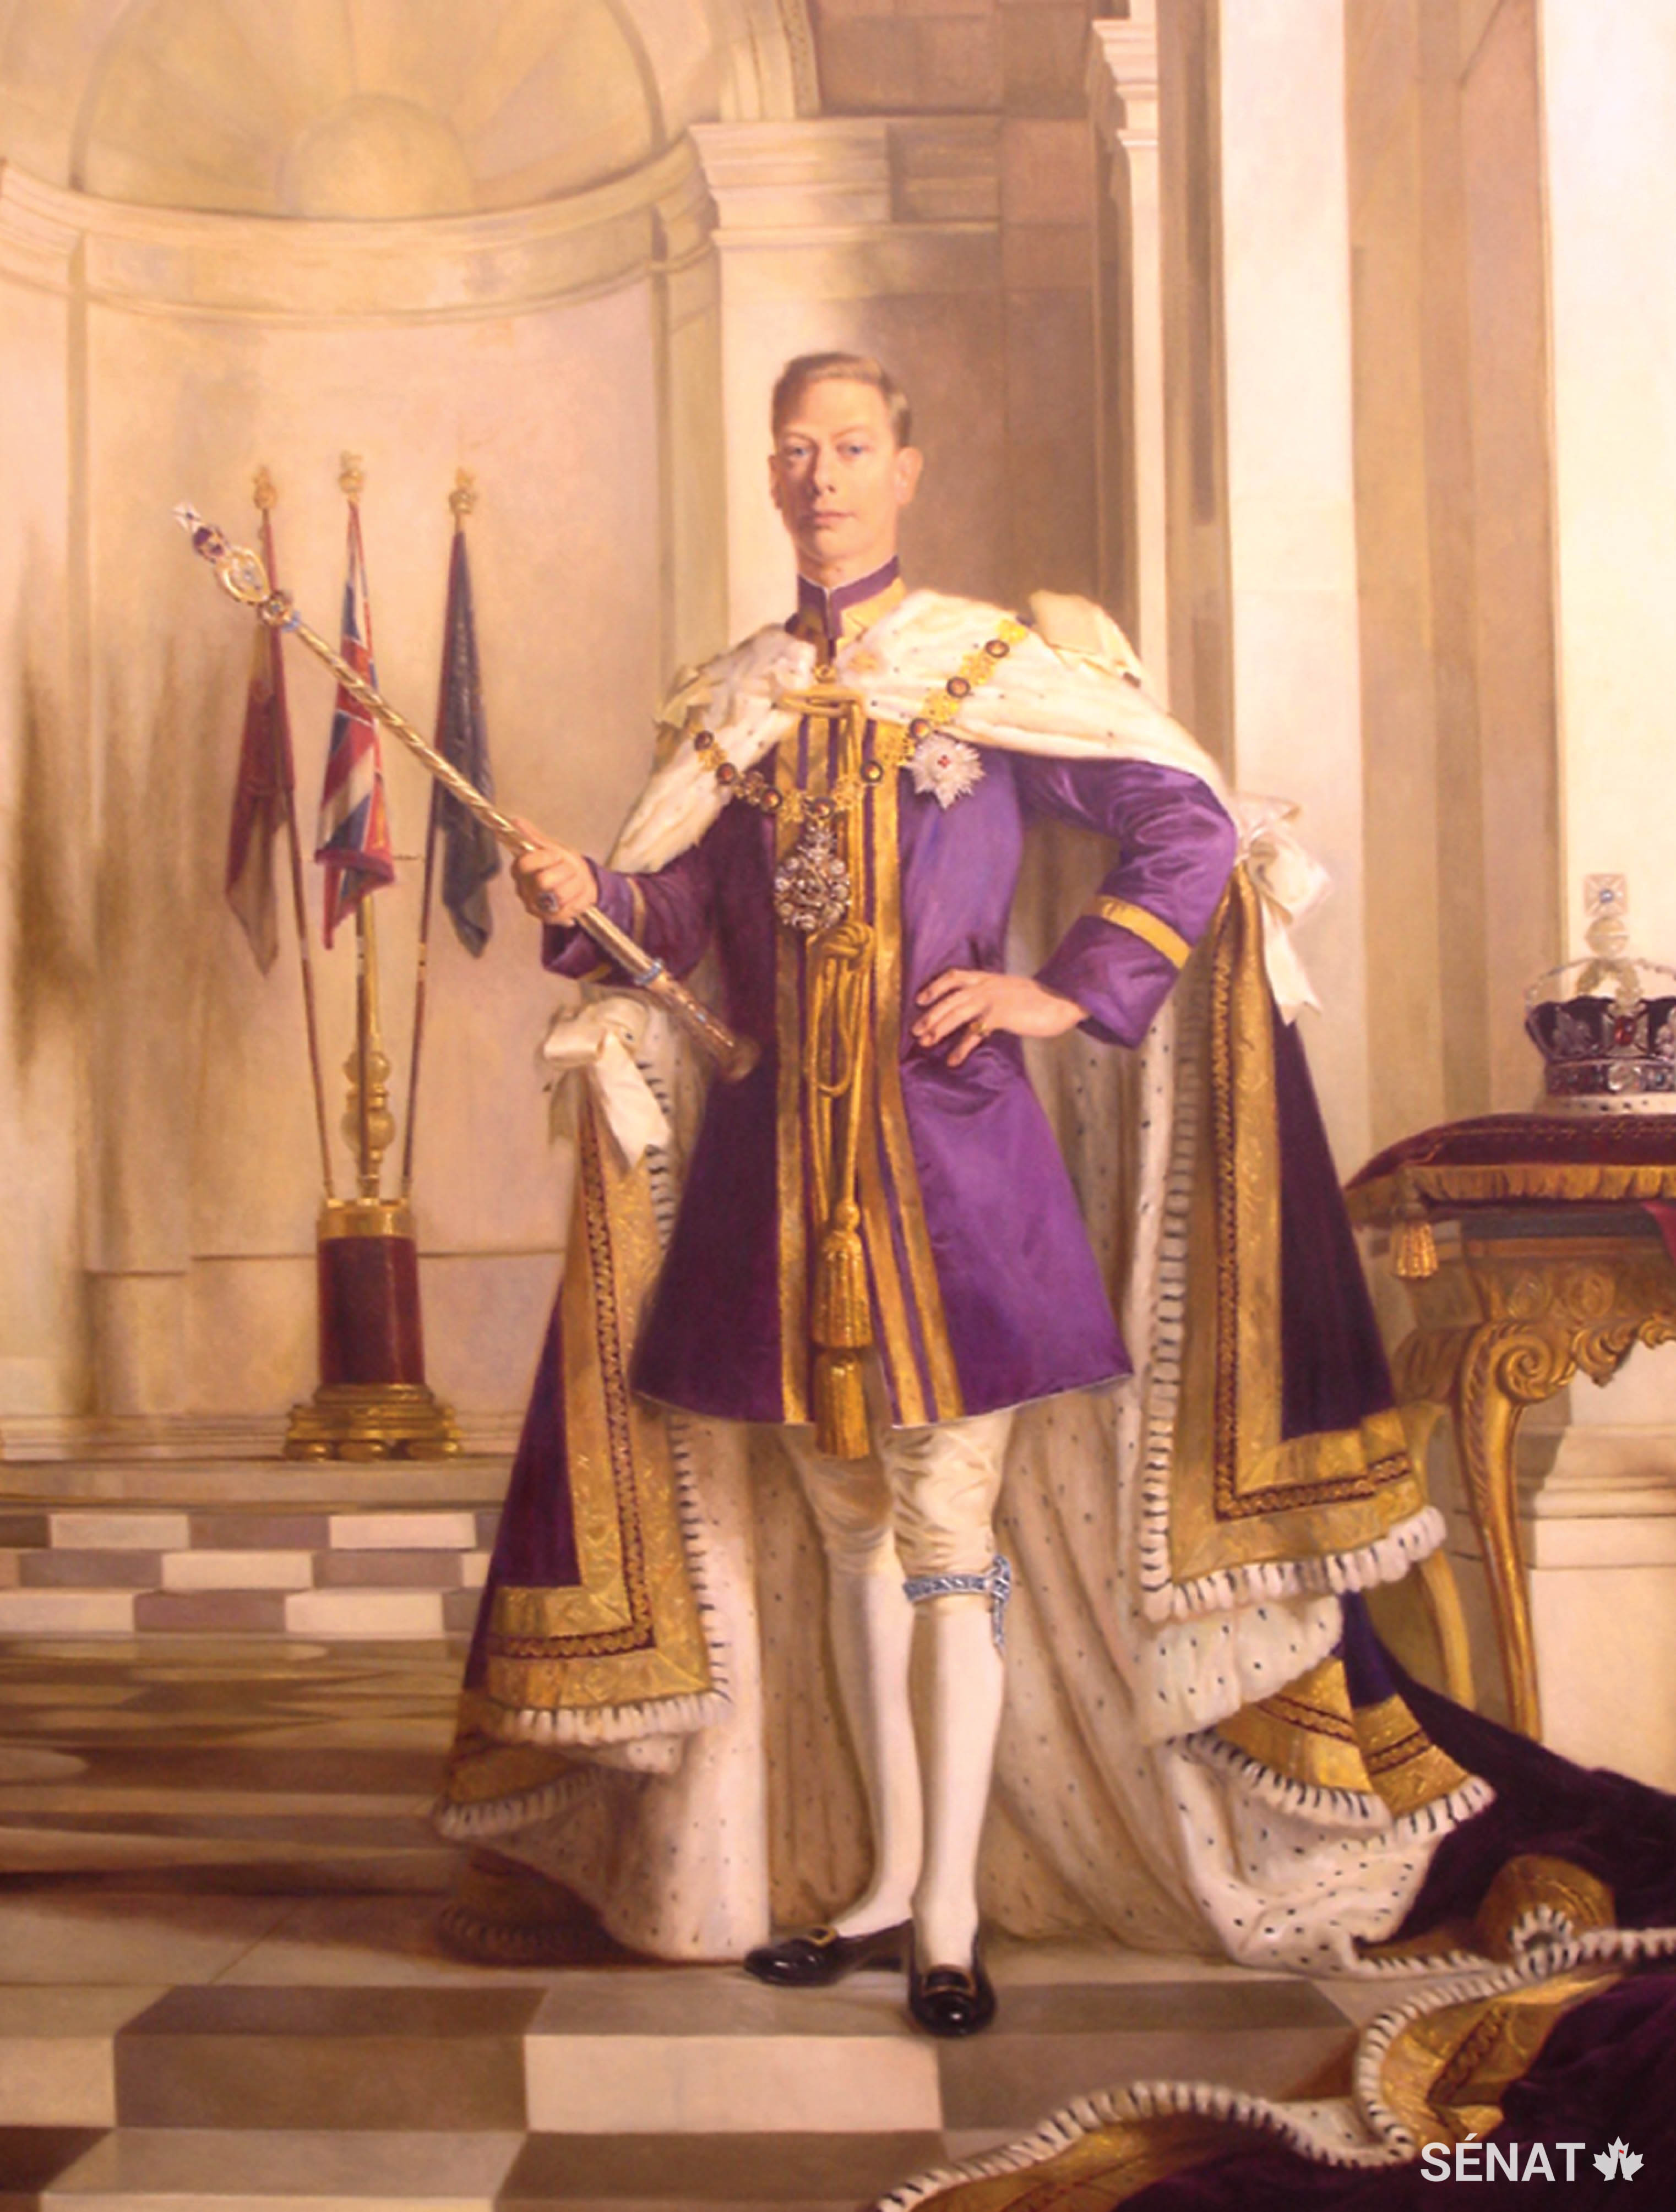 Le portrait du roi George VI peint par Robert Swain montre un roi calme et solennel qui a présidé la création des nations du Commonwealth ainsi que l’entrée de Terre-Neuve dans la Confédération en 1949.